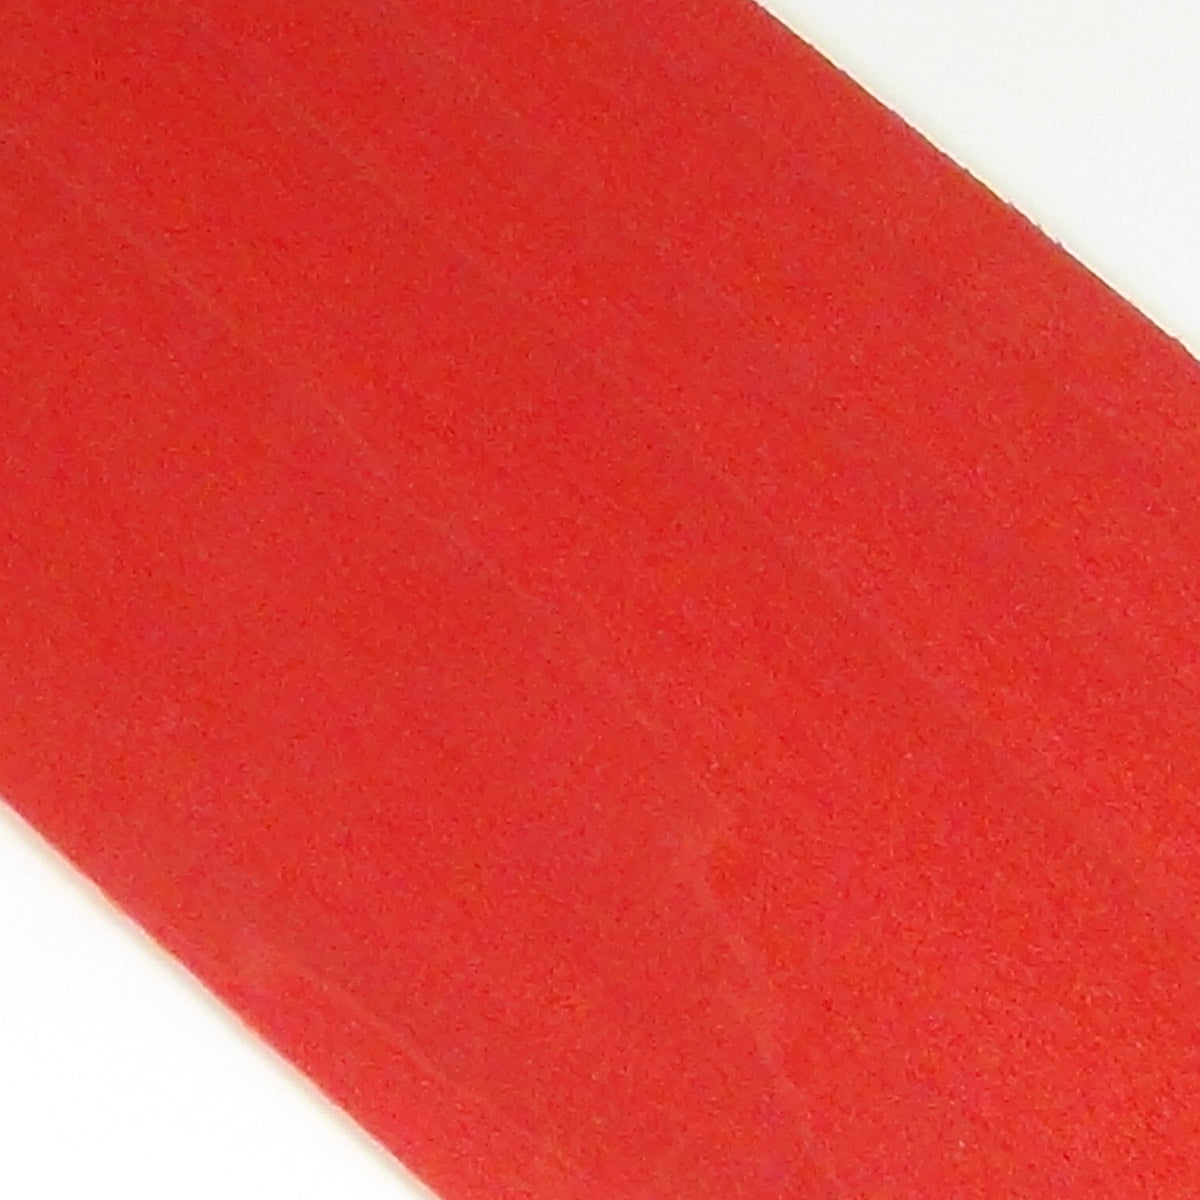 Dyed wood Veneer red